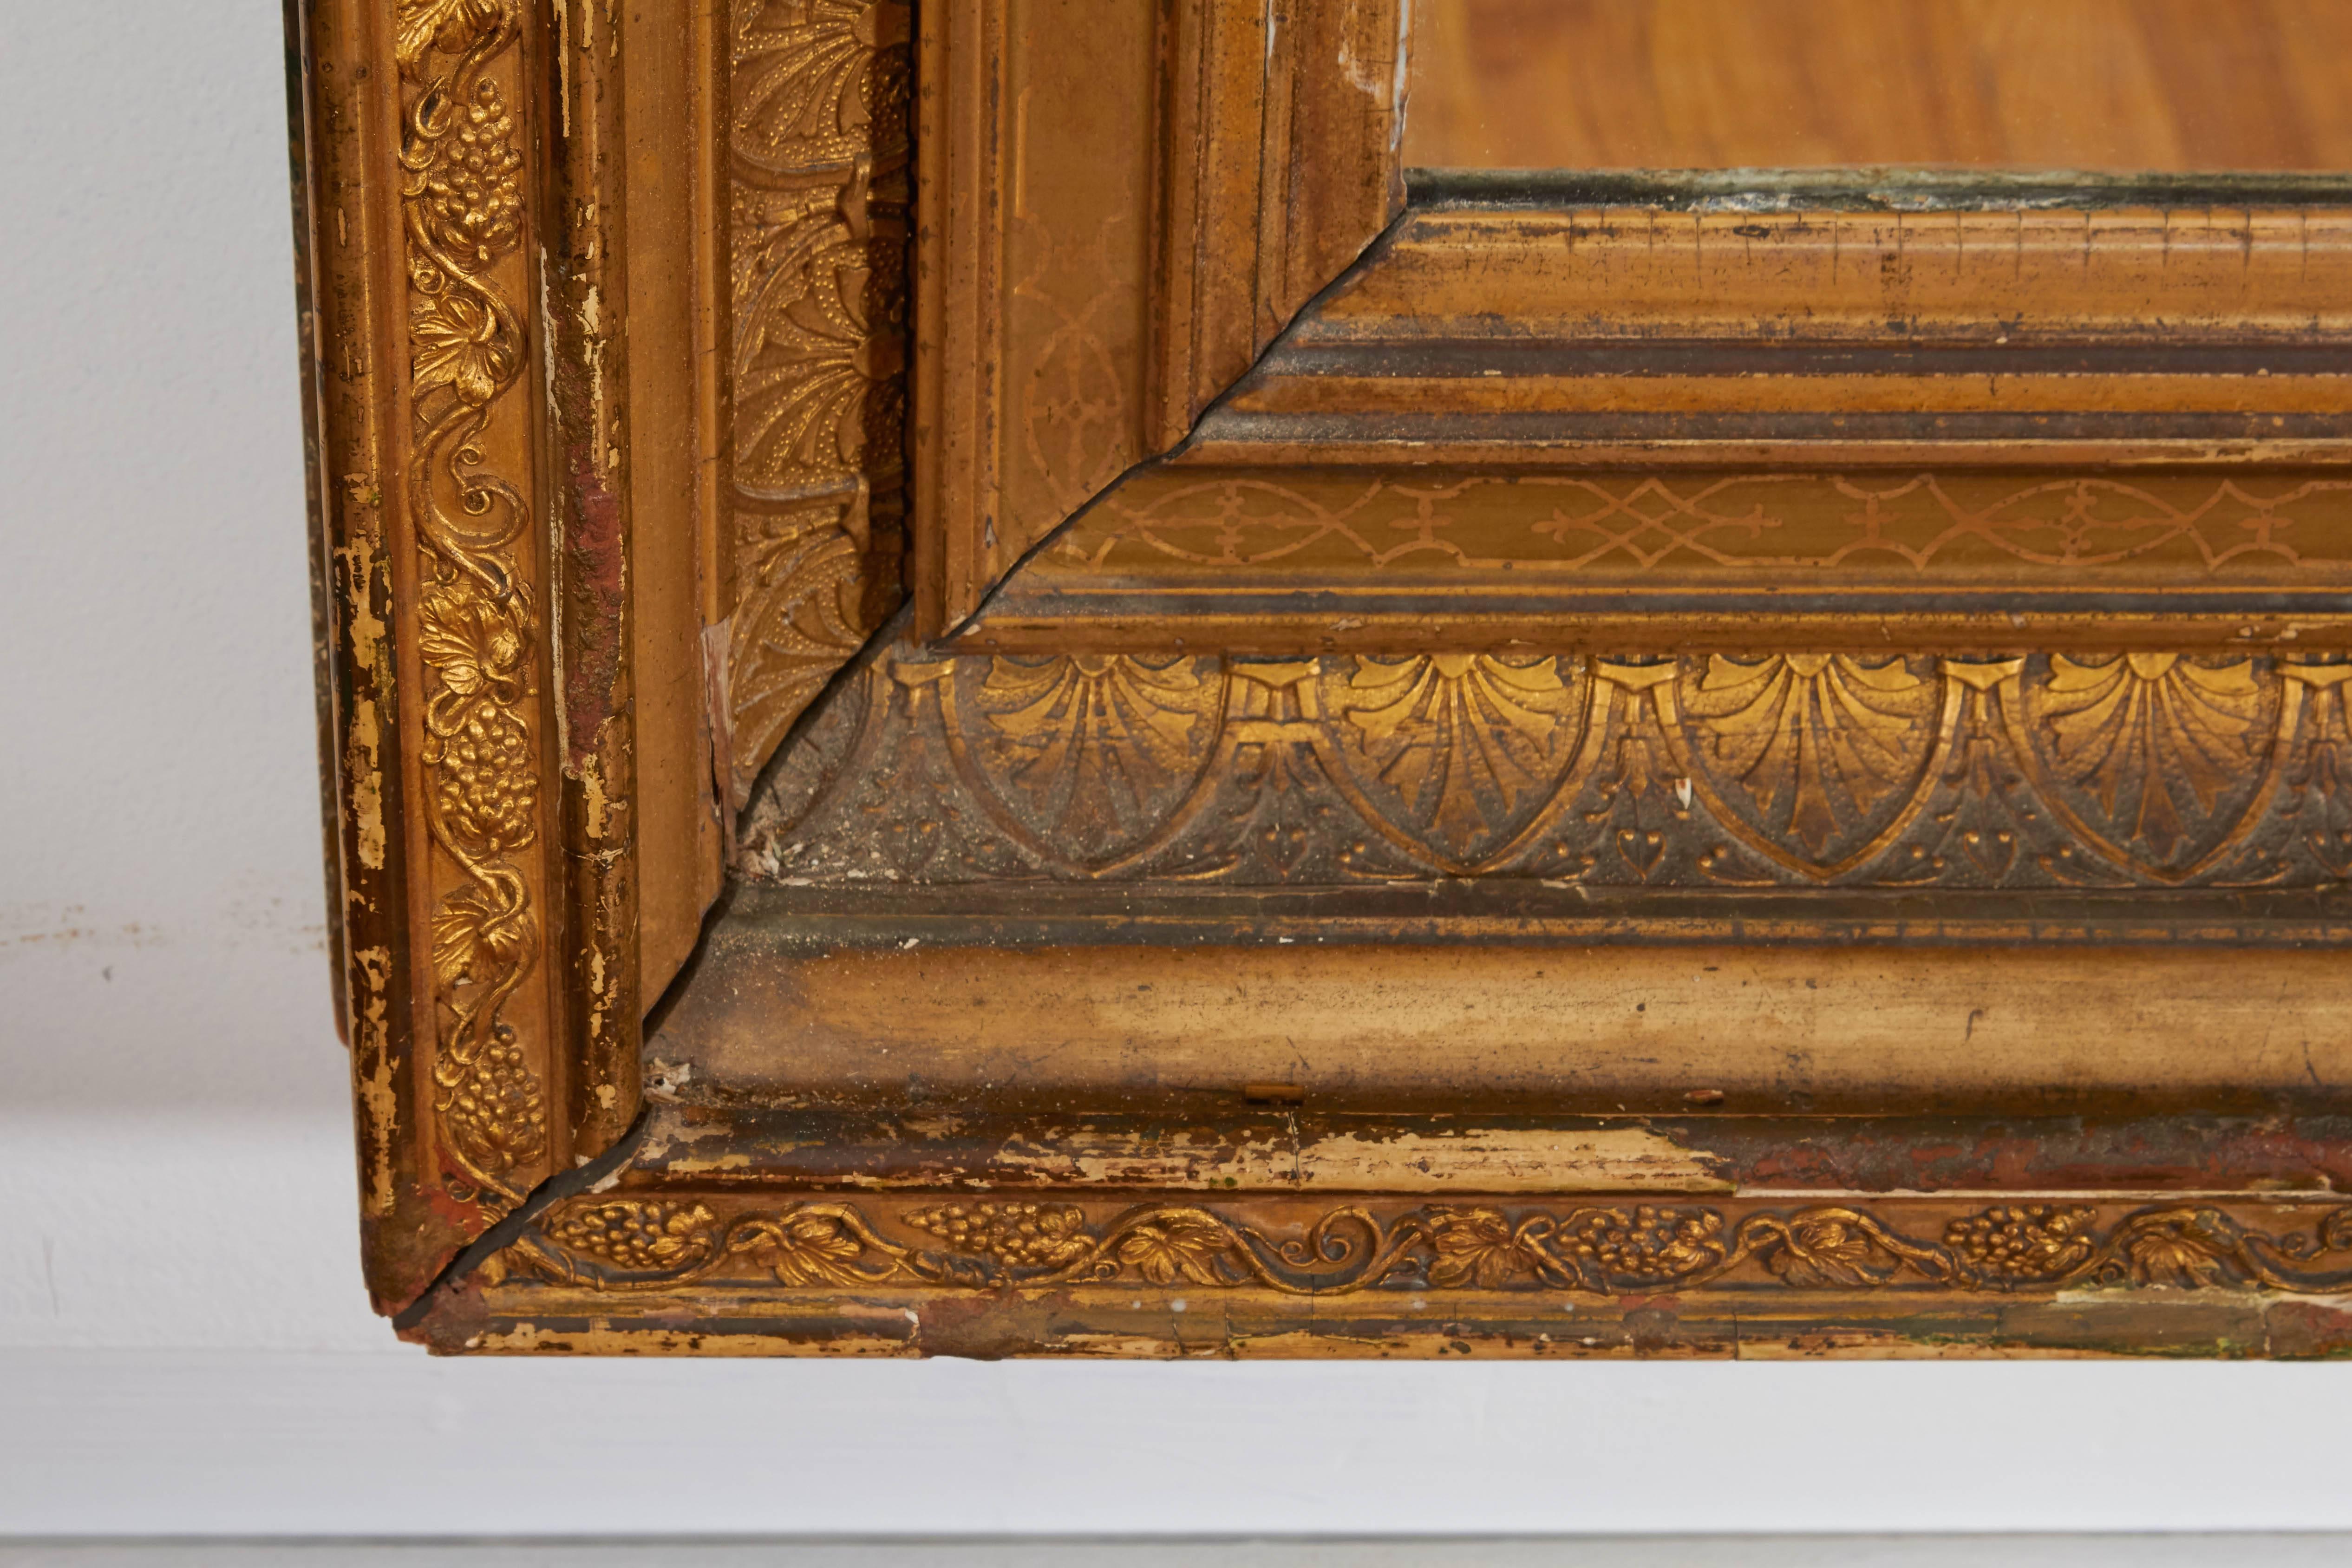 Großer Kaminsims oder Pfeilerspiegel aus dem frühen 20. Jahrhundert, Rahmen aus vergoldetem Holz im Empire-Stil mit klassischen Motiven, darunter Hymnen und Weinreben. Ausgezeichneter antiker Zustand, altersgemäße Abnutzung an Rahmen und